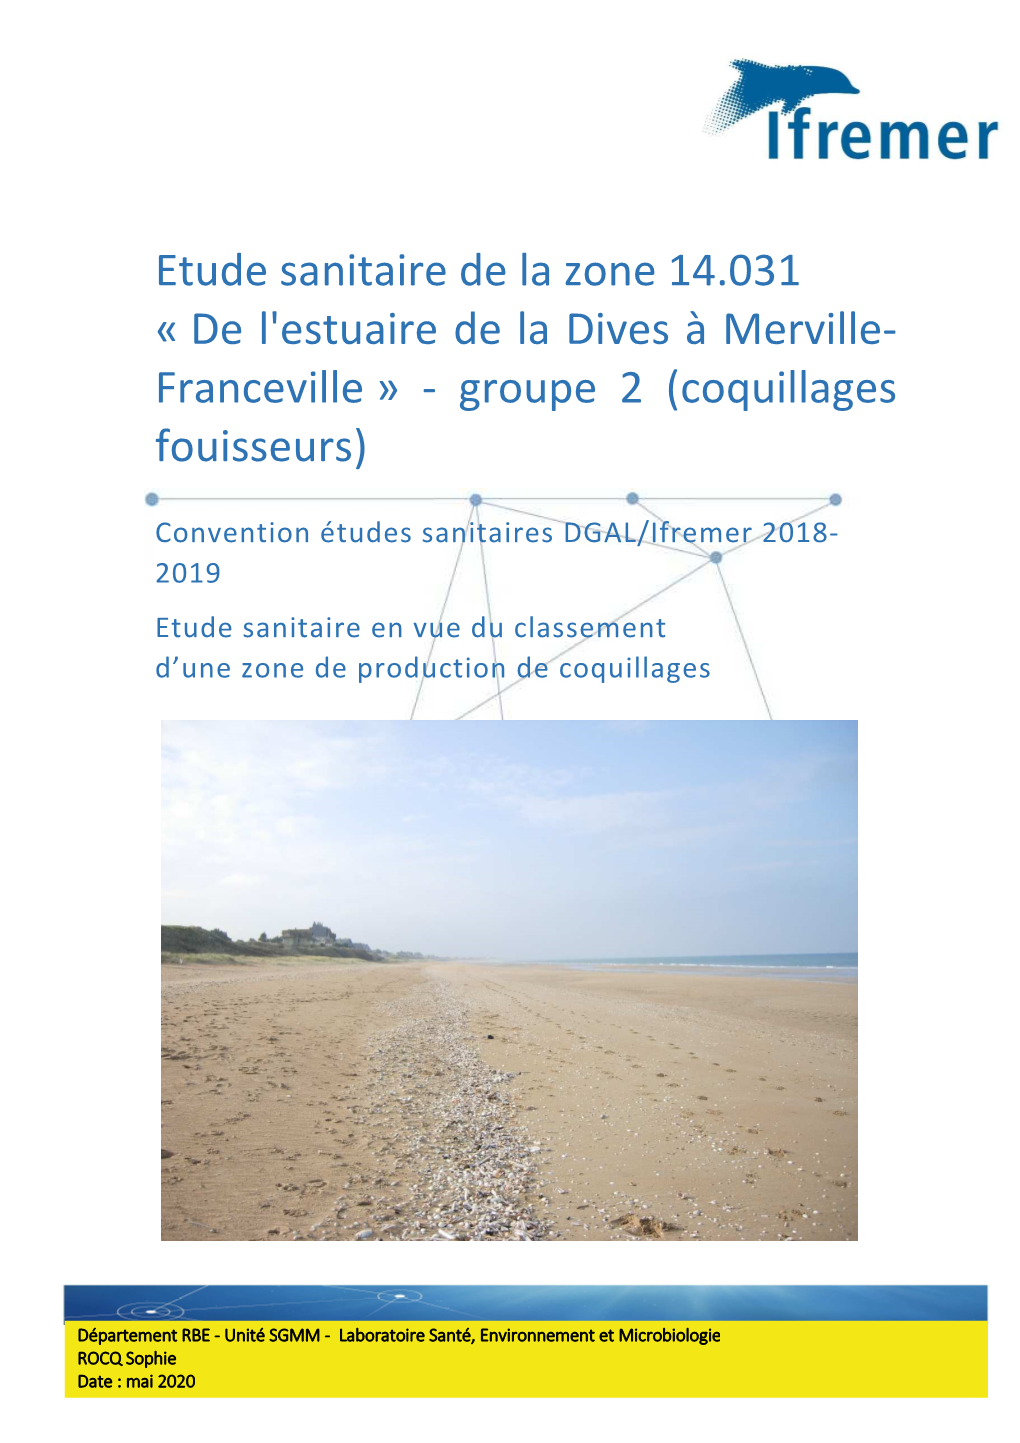 Etude Sanitaire De La Zone 14.031 « De L'estuaire De La Dives À Merville- Franceville » - Groupe 2 (Coquillages Fouisseurs)